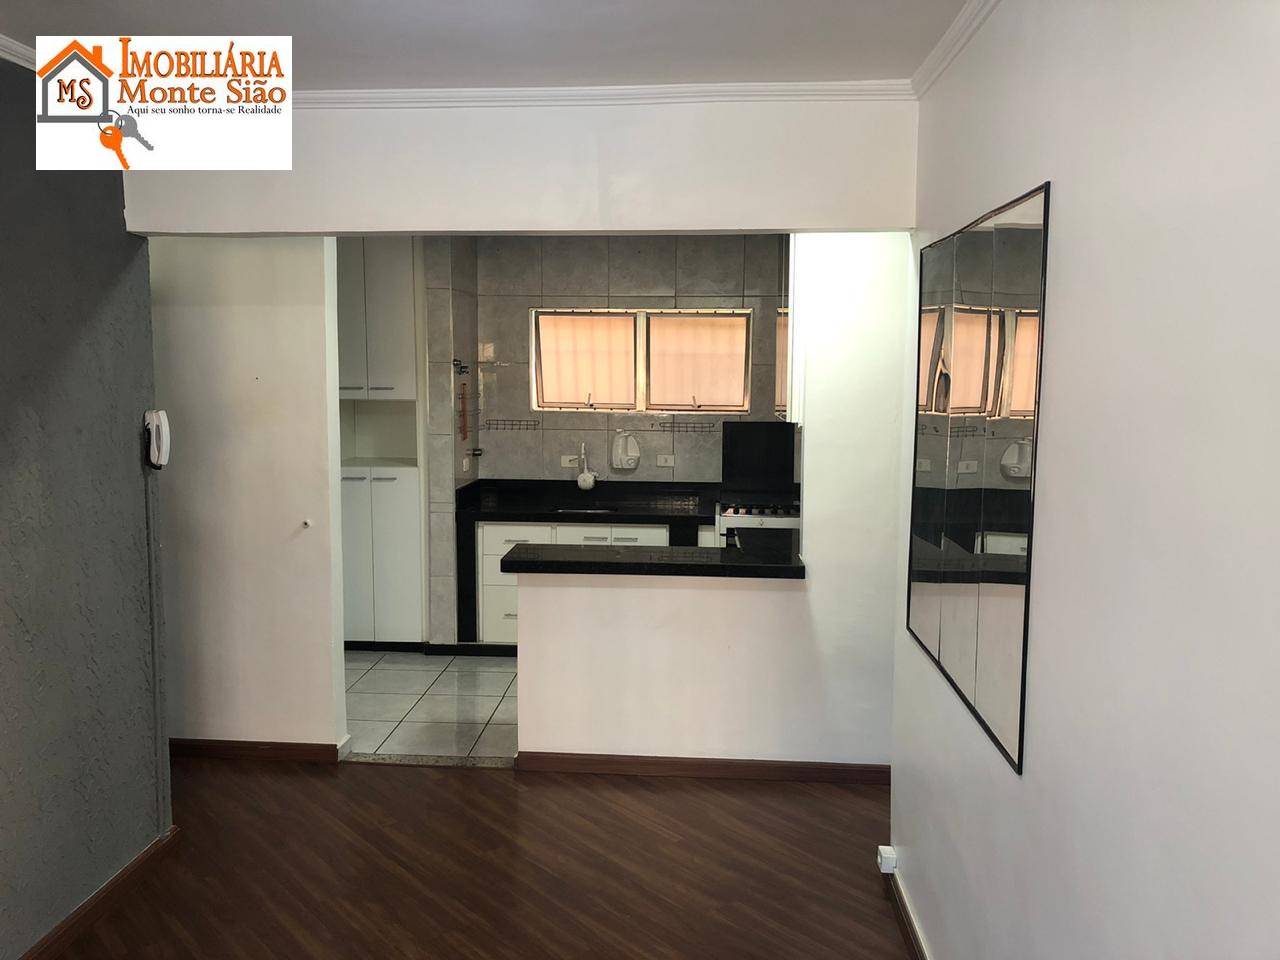 Apartamento com 1 dormitório à venda, 50 m² por R$ 228.000,00 - Vila Augusta - Guarulhos/SP